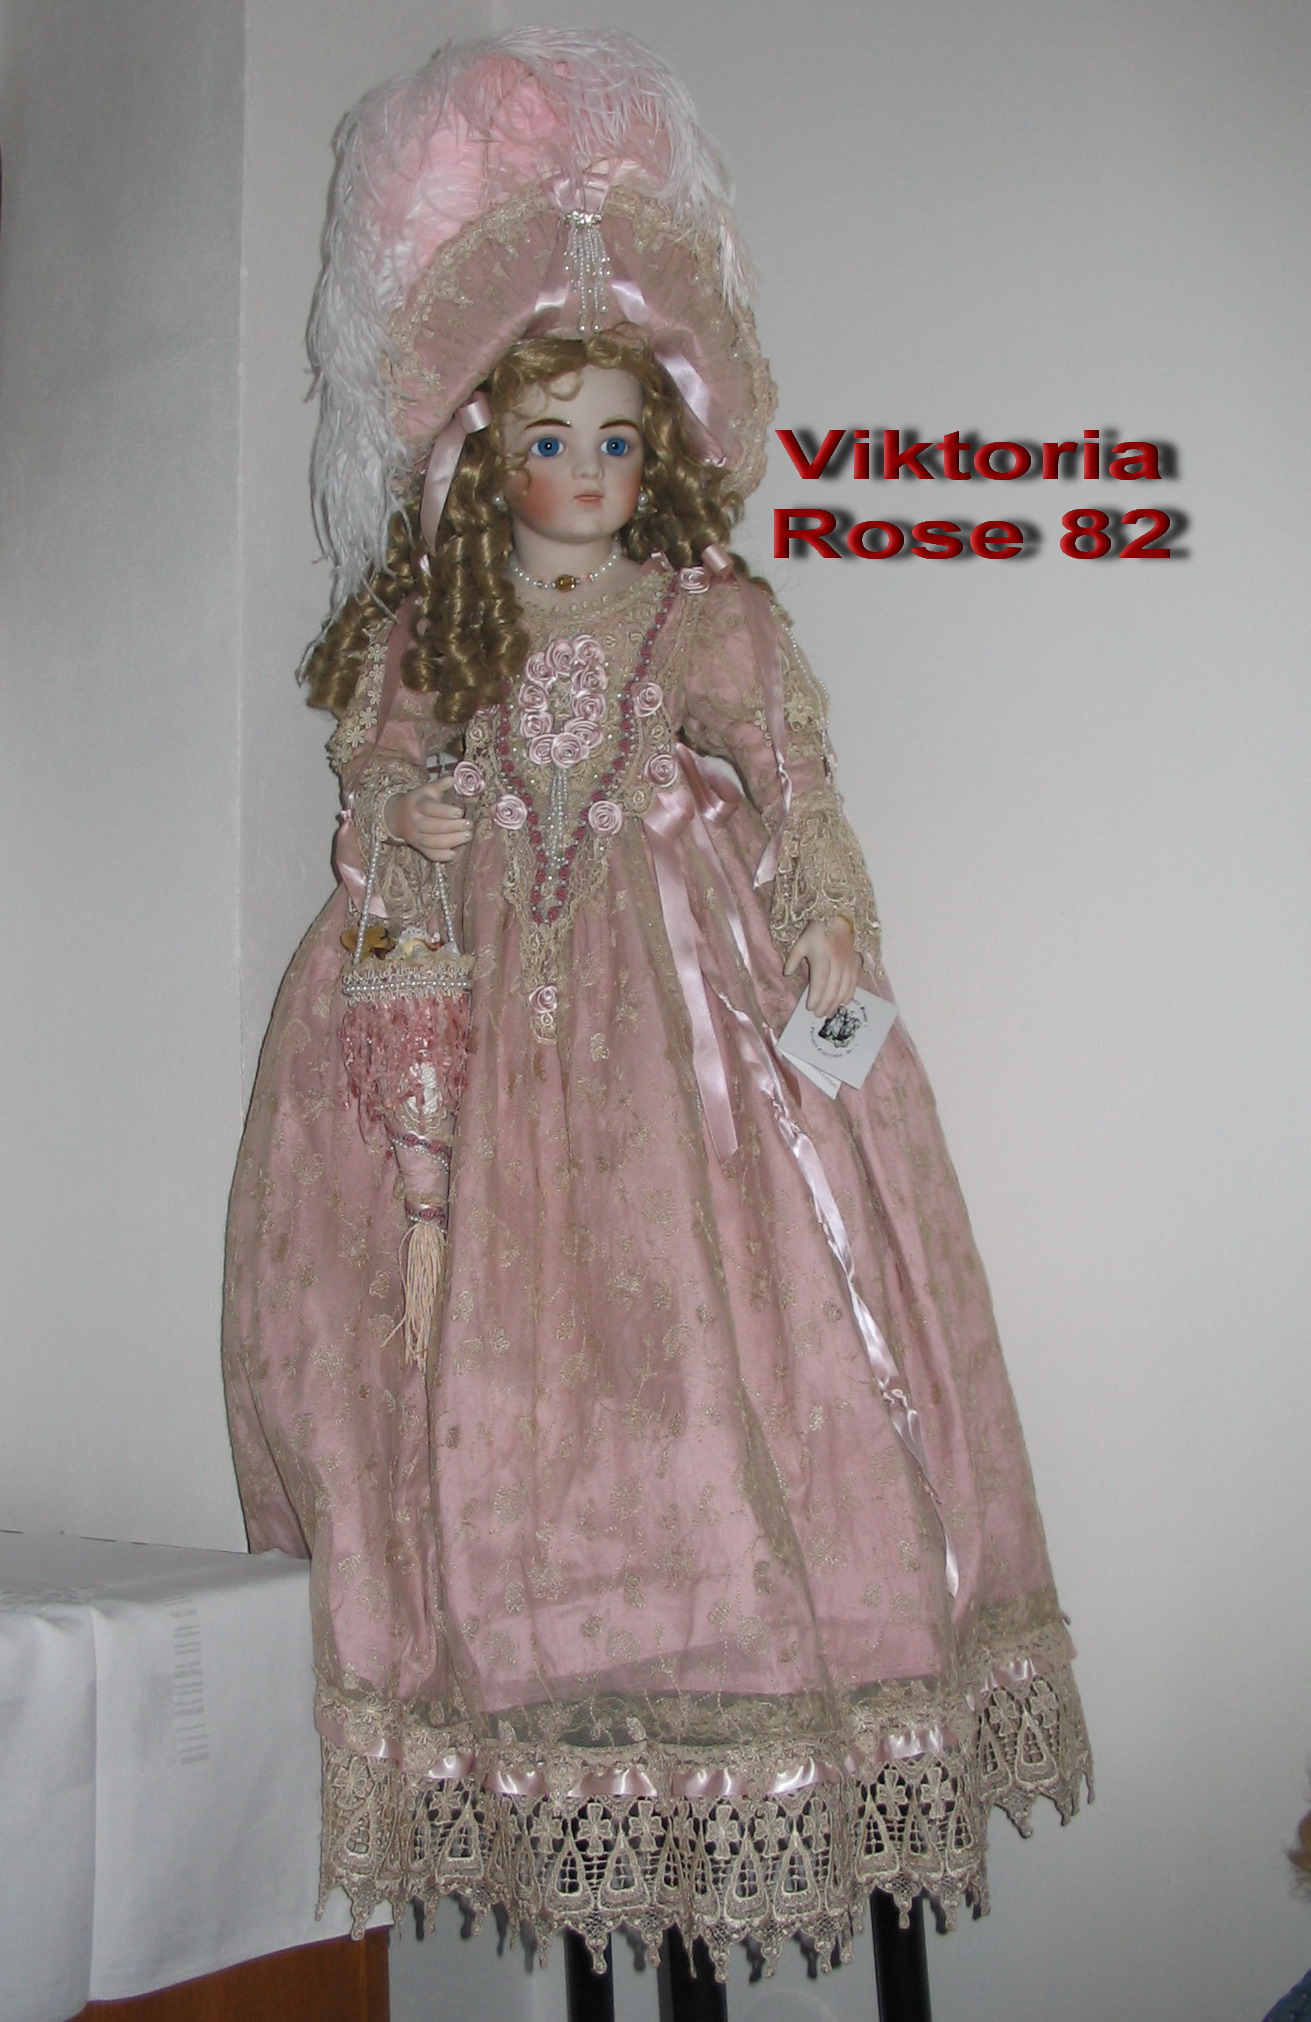 Viktoria Rose 52